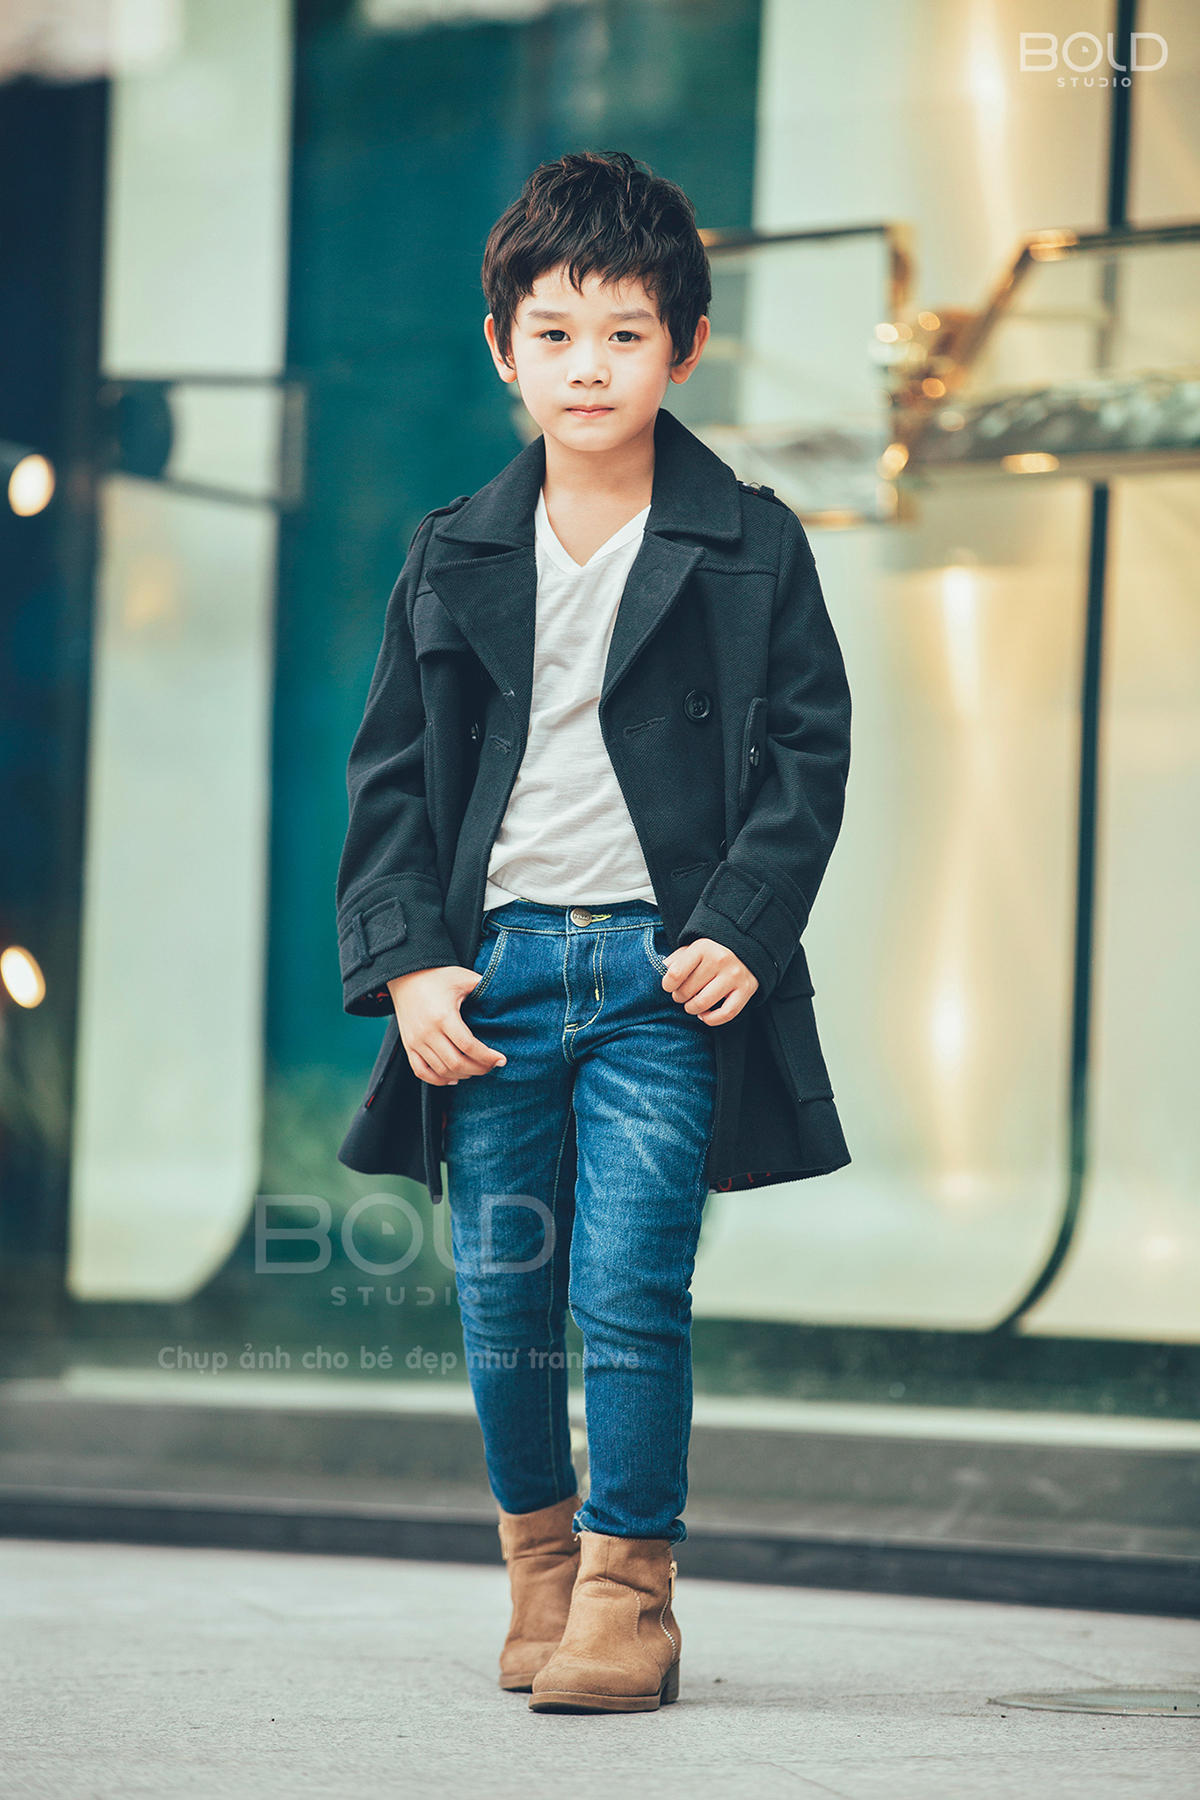 1001+ Concept và phong cách chụp ảnh cho bé trai đẹp - Sankid